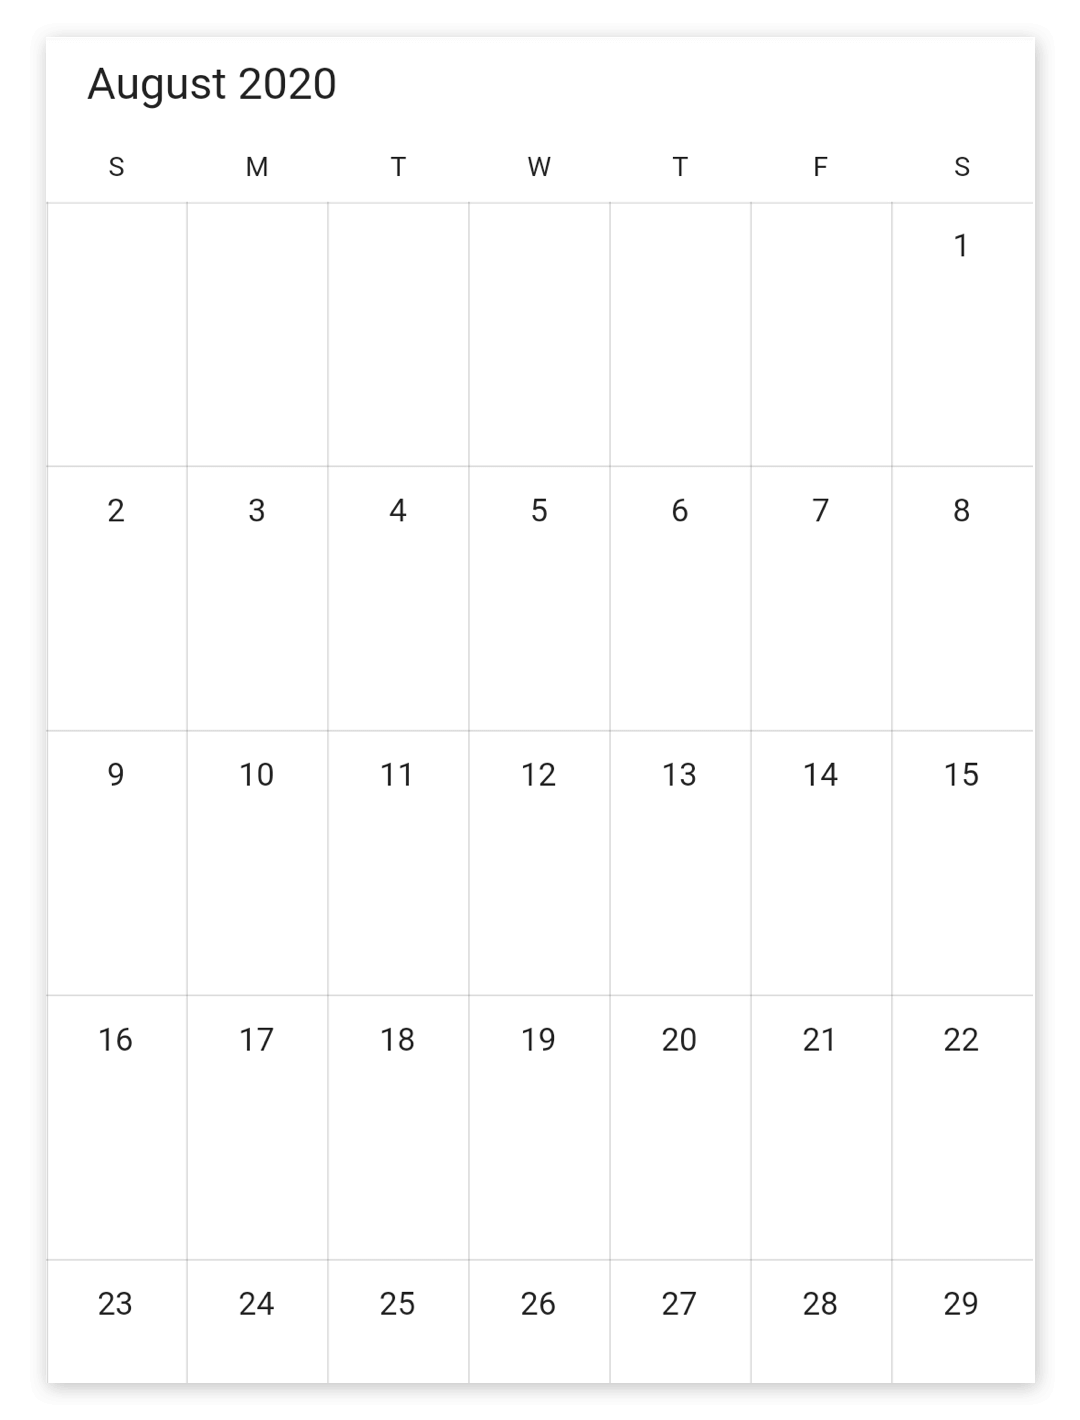 Blackout dates